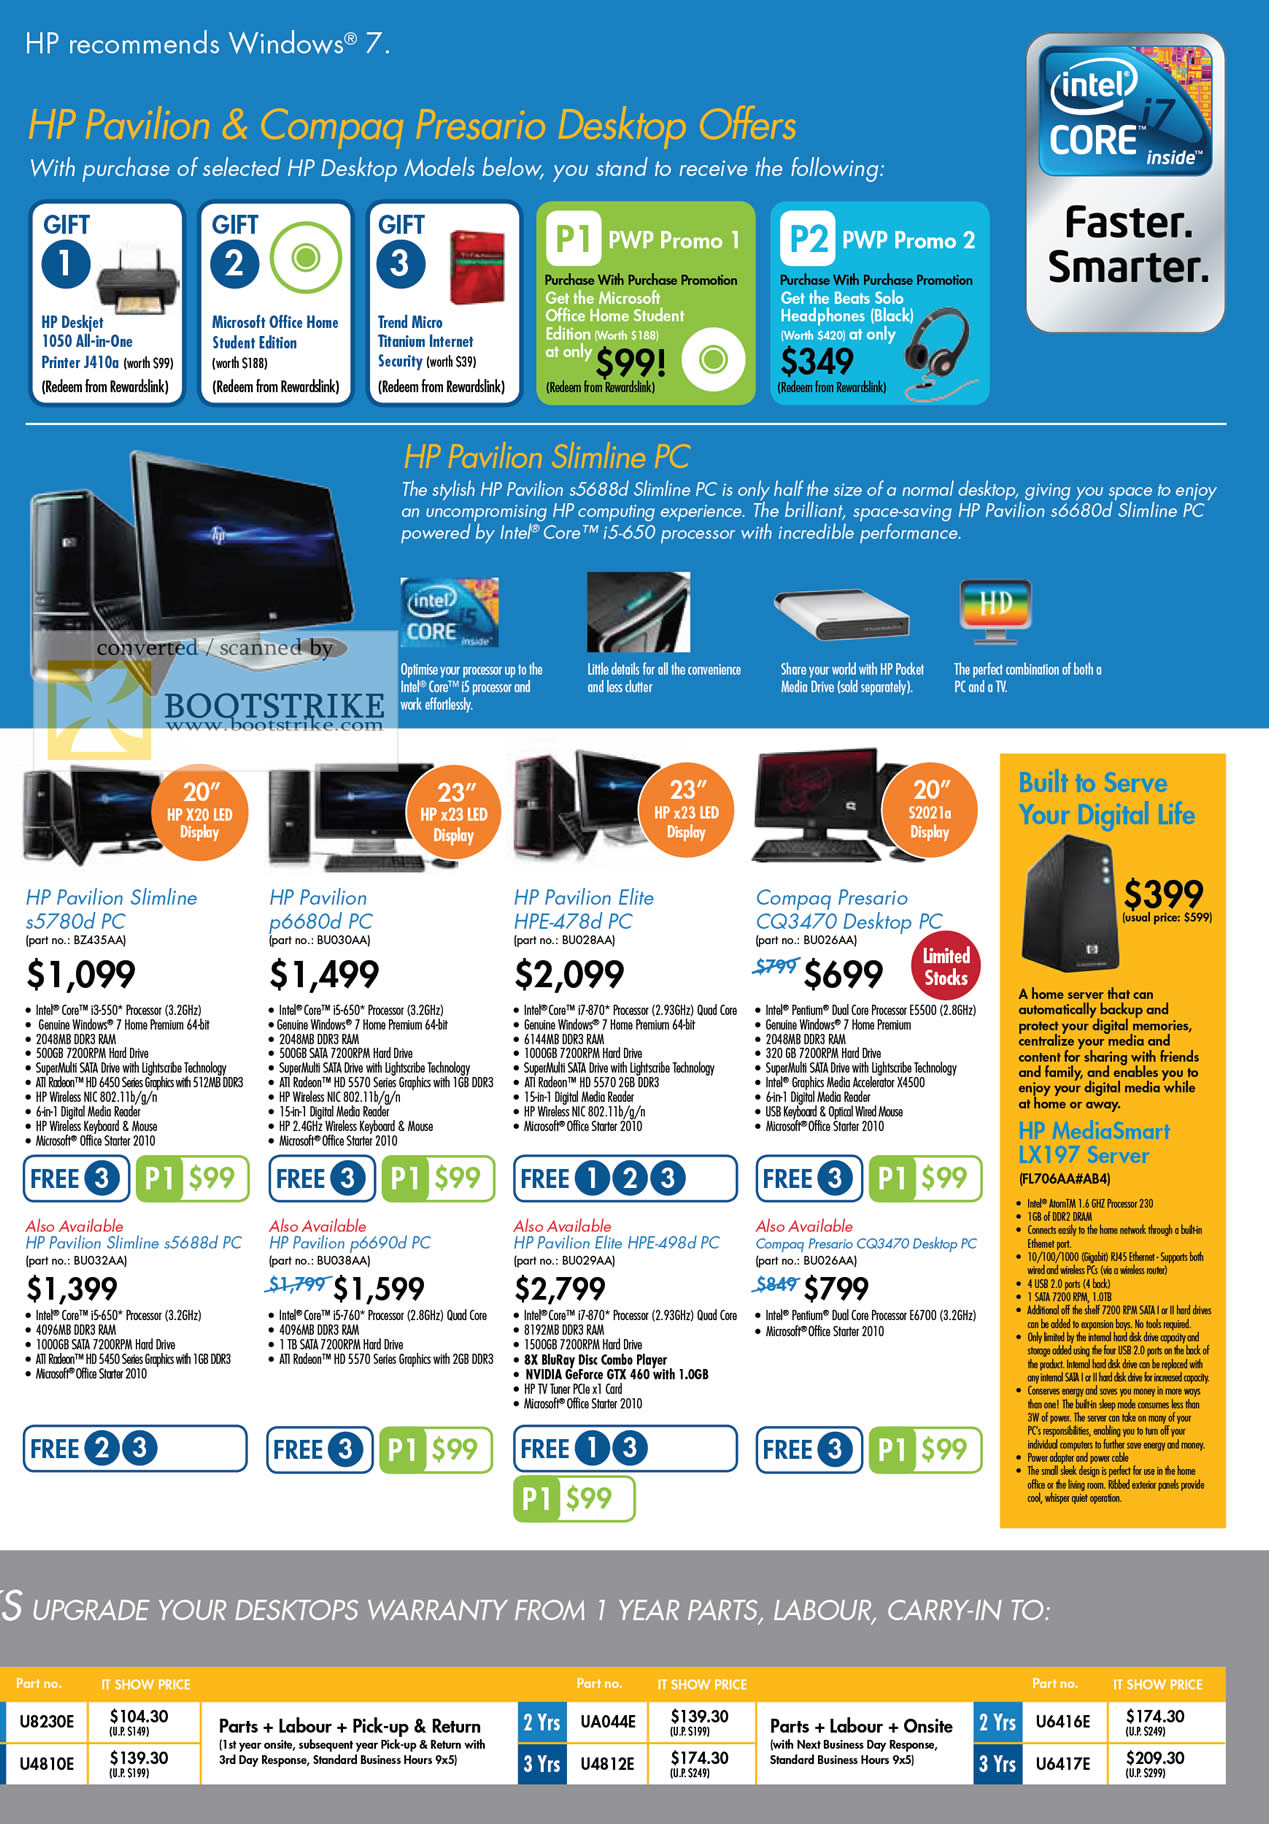 IT Show 2011 price list image brochure of HP Desktop PCs Pavilion Slimline S5780d P6680d Elite HPE-478d Compaq Presario CQ3470 MediaSmart LX197 S5688d P6690d